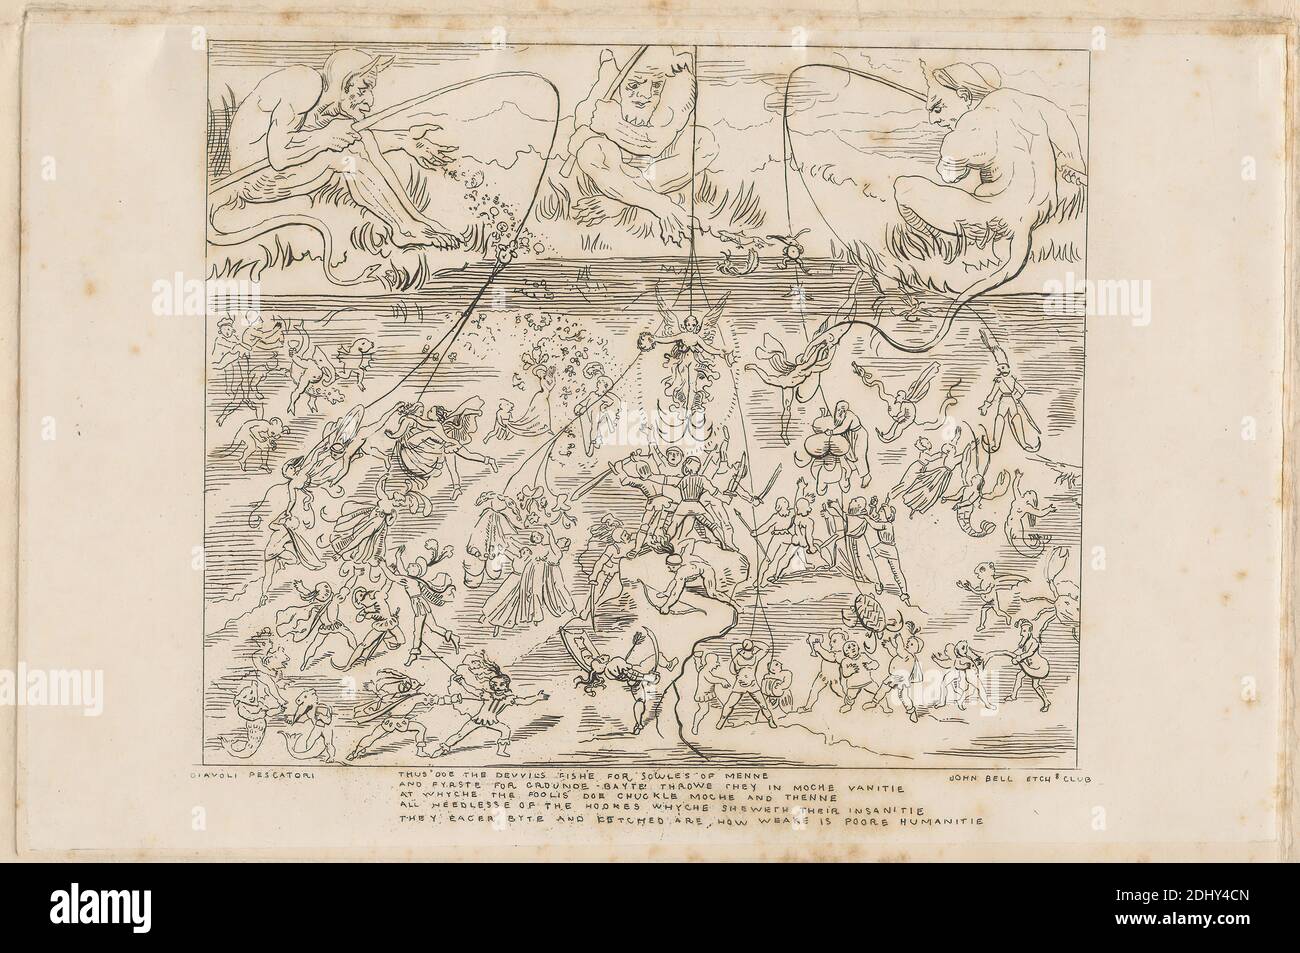 Diavoli pescatori, Stampa realizzata da John Bell, 1811–1895, inglese, pubblicato da John Bell, 1811–1895, inglese, tra il 1838 e il 1850, incisione su carta di wove beige di spessore moderato, leggermente testurizzata con collé di creme, foglio: 11 1/8 x 14 15/16 pollici (28.2 x 37.9 cm), piatto: 6 x 9 pollici (15.2 x 22.9 cm), e immagine: 5 1/8 x 6 3/16 pollici (13 x 15.7 cm), allegoria, archi, peccati cardinali, aragoste clawed, costume, granchi, danza, morte, diavolo, abiti, piume, recinzione, lotta, pesce, pescatori (persone), pesca, flirtare, golosità, avidità, soggetto storico, lust, merlumi, lago Foto Stock